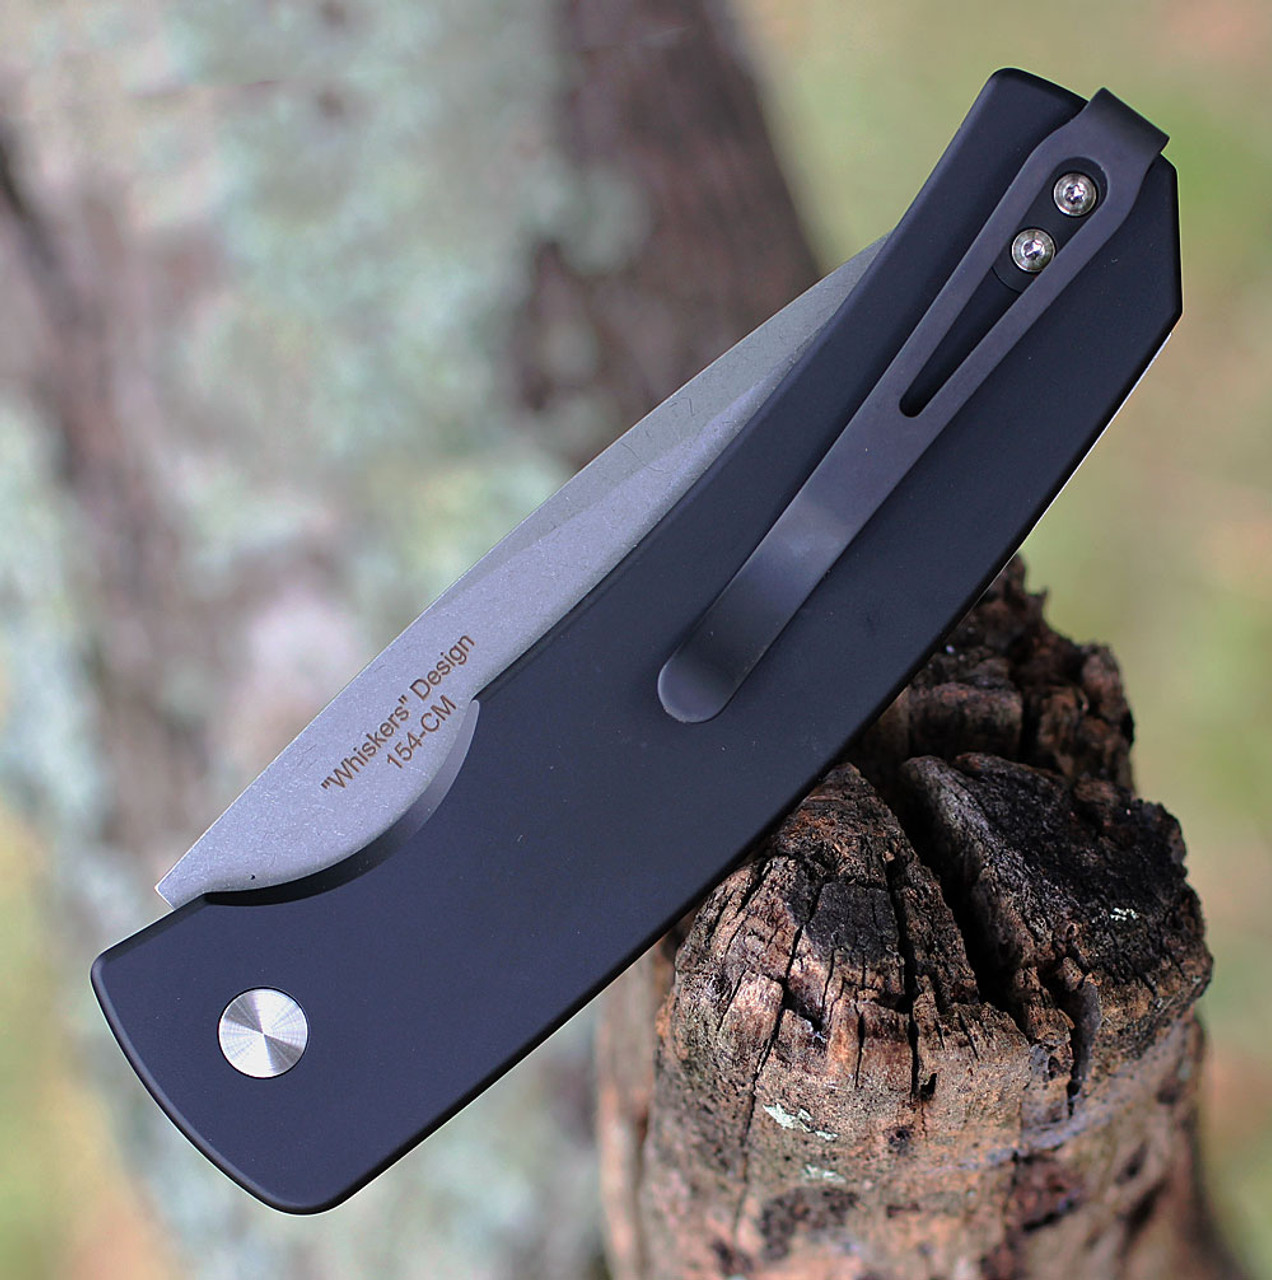 Pro-Tech Knives Magic @ Scale Release Automatic Knife (M2601) - 3.75 Stonewash 154CM Drop Point Plain Blade, Black Aluminum Handle